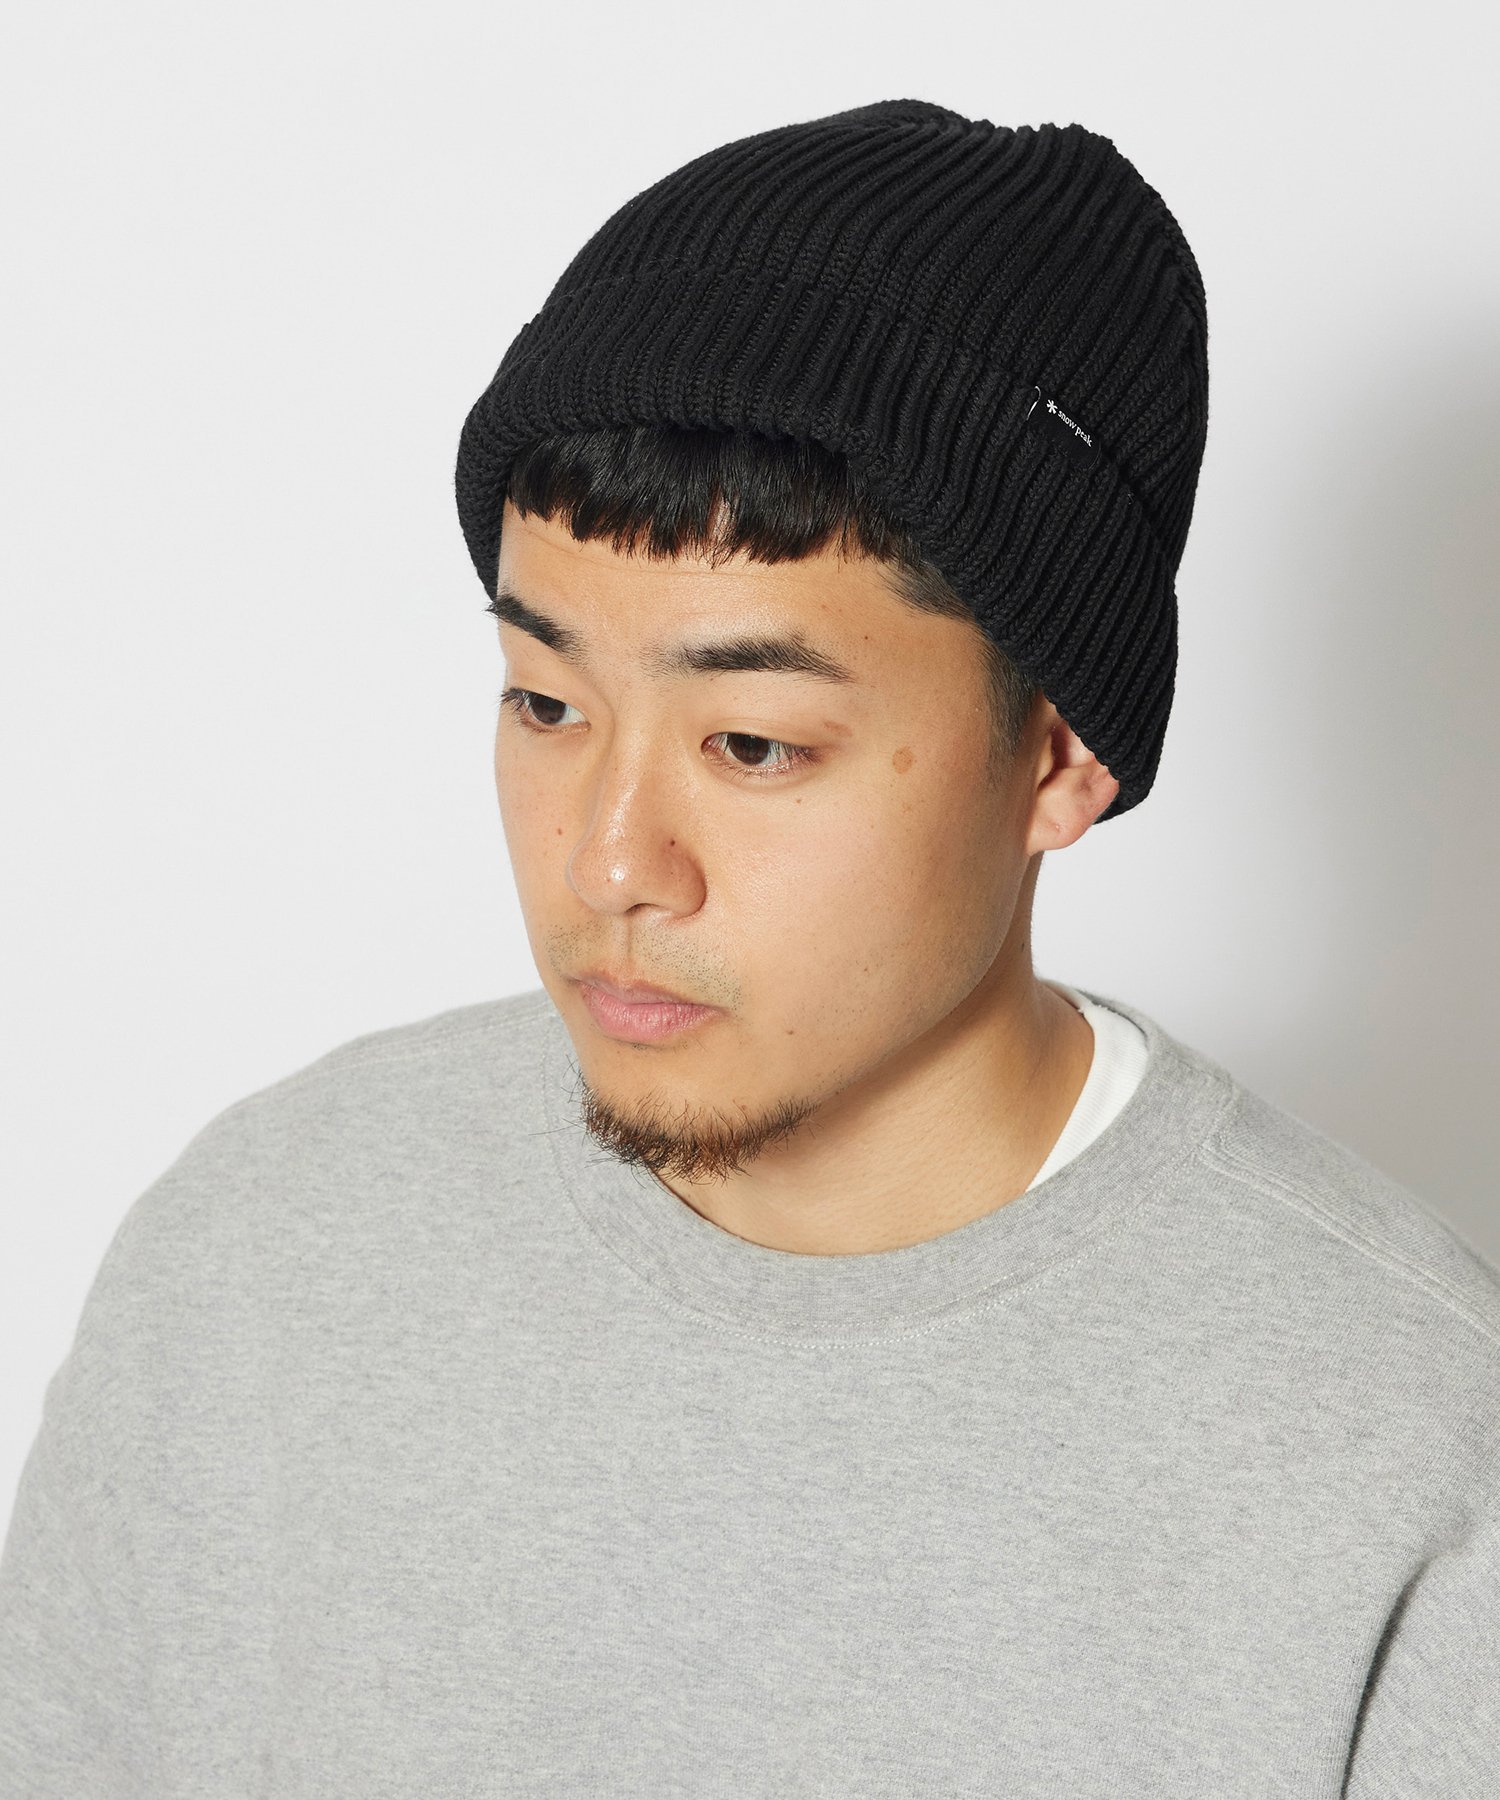 楽天Rakuten FashionSnow Peak Pe/Co Knit Cap スノーピーク 帽子 キャップ ブラック ベージュ ネイビー【送料無料】